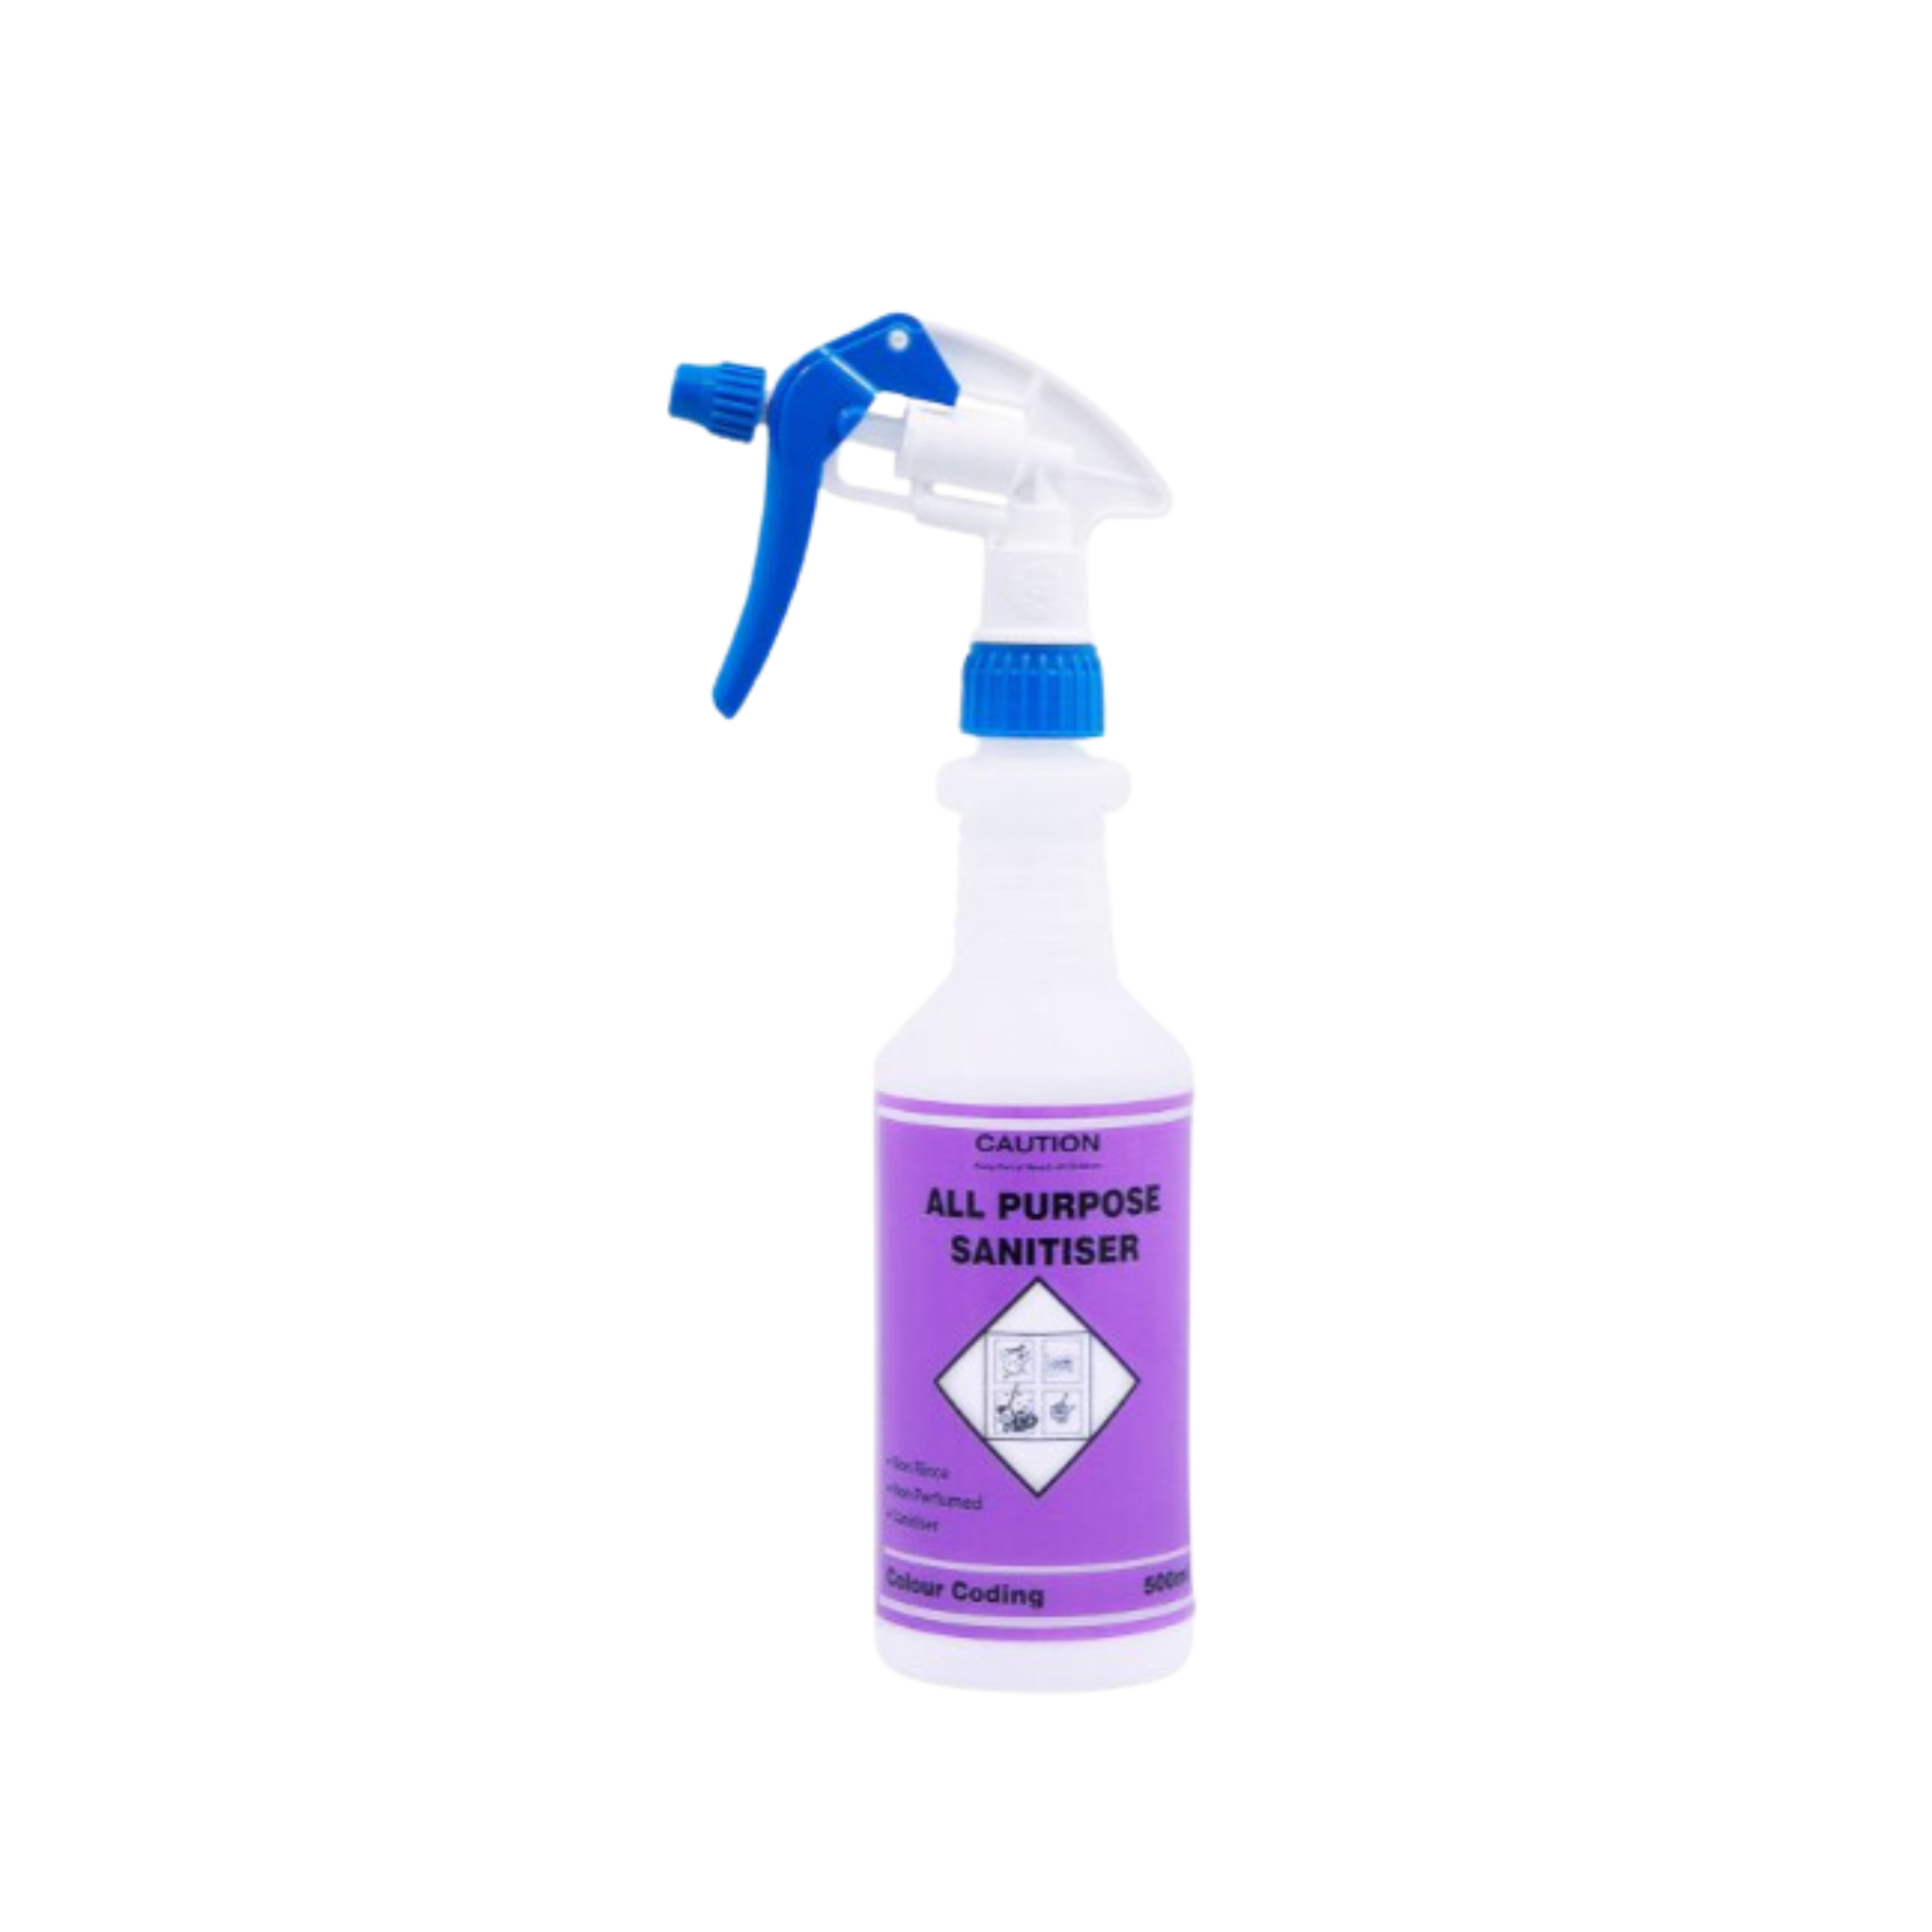 NAN Spray Trigger Bottle - All Purpose Food Grade Sanitiser